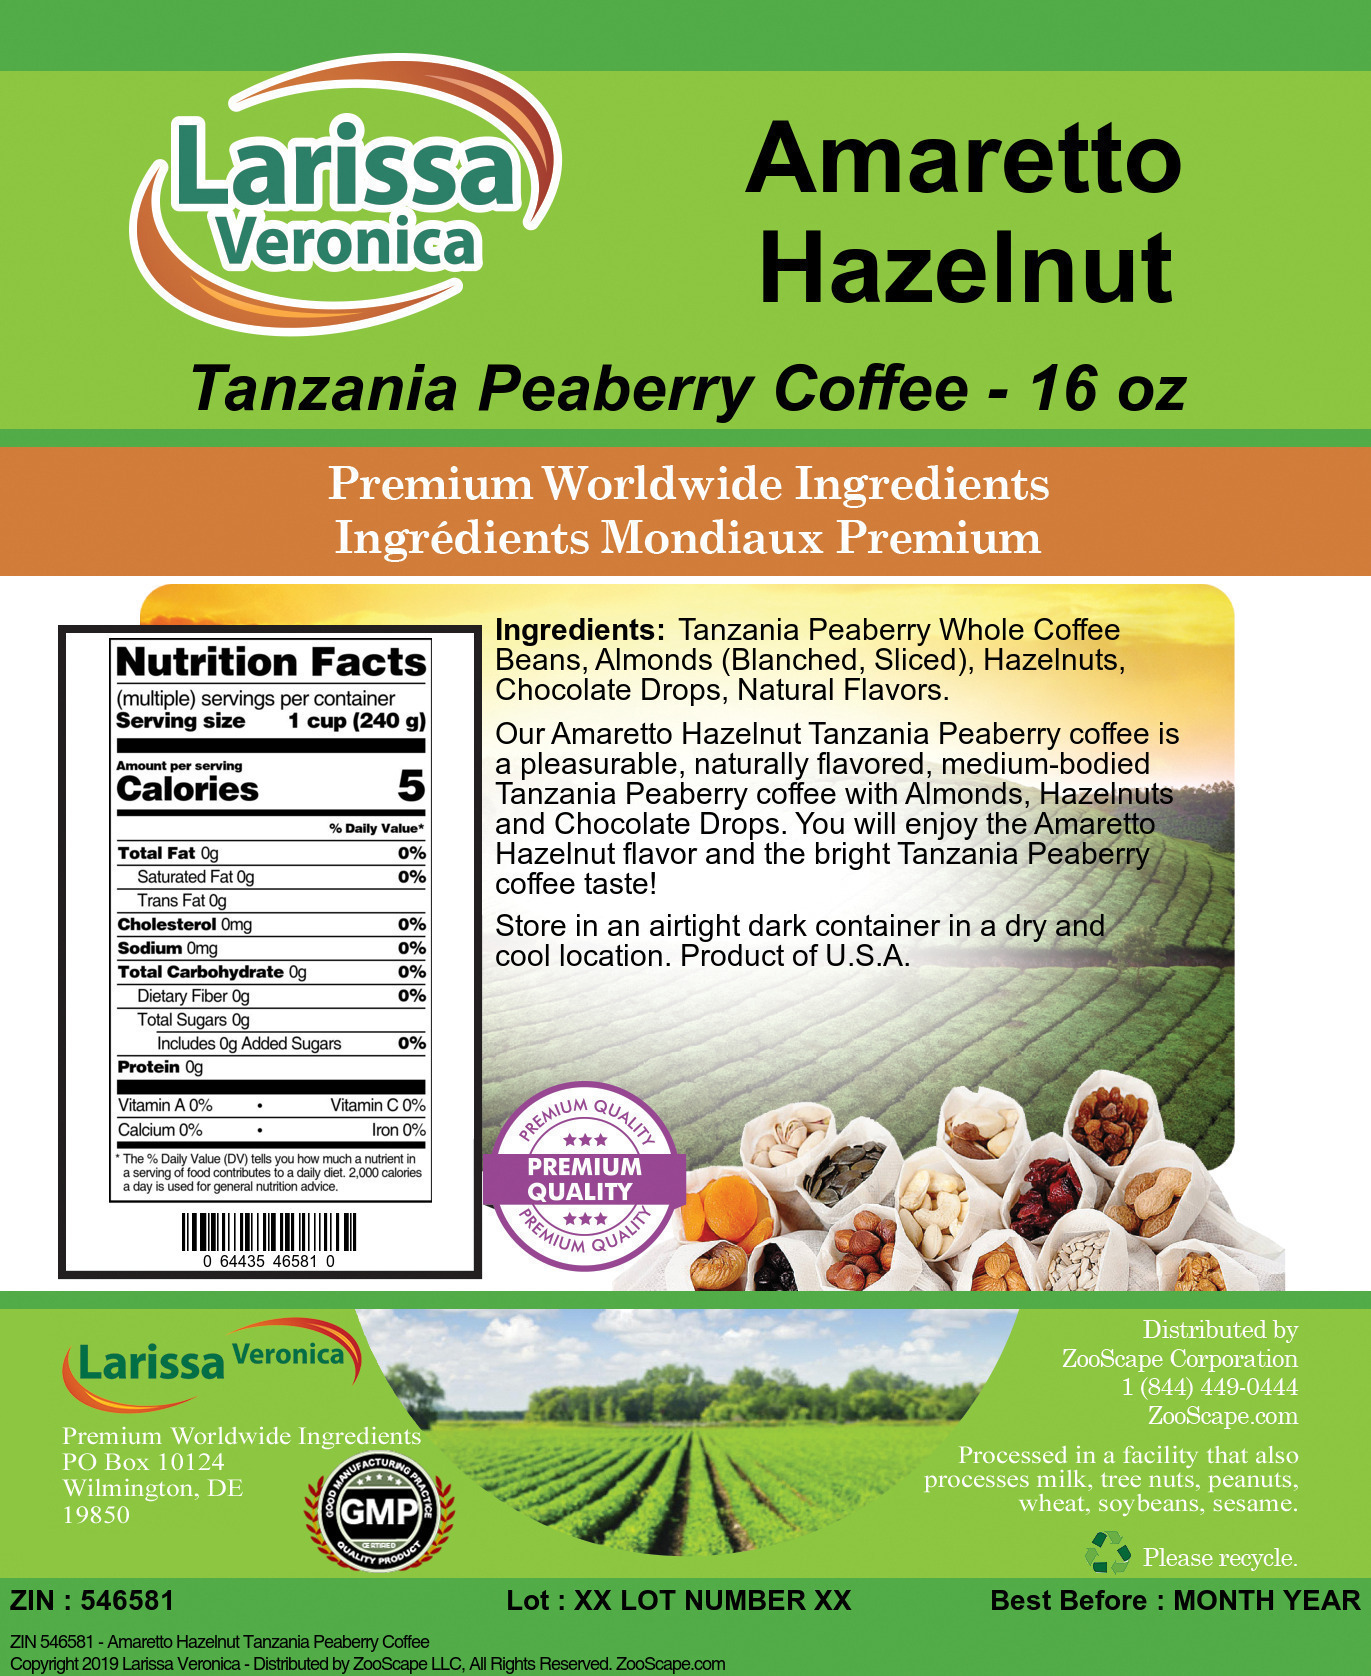 Amaretto Hazelnut Tanzania Peaberry Coffee - Label